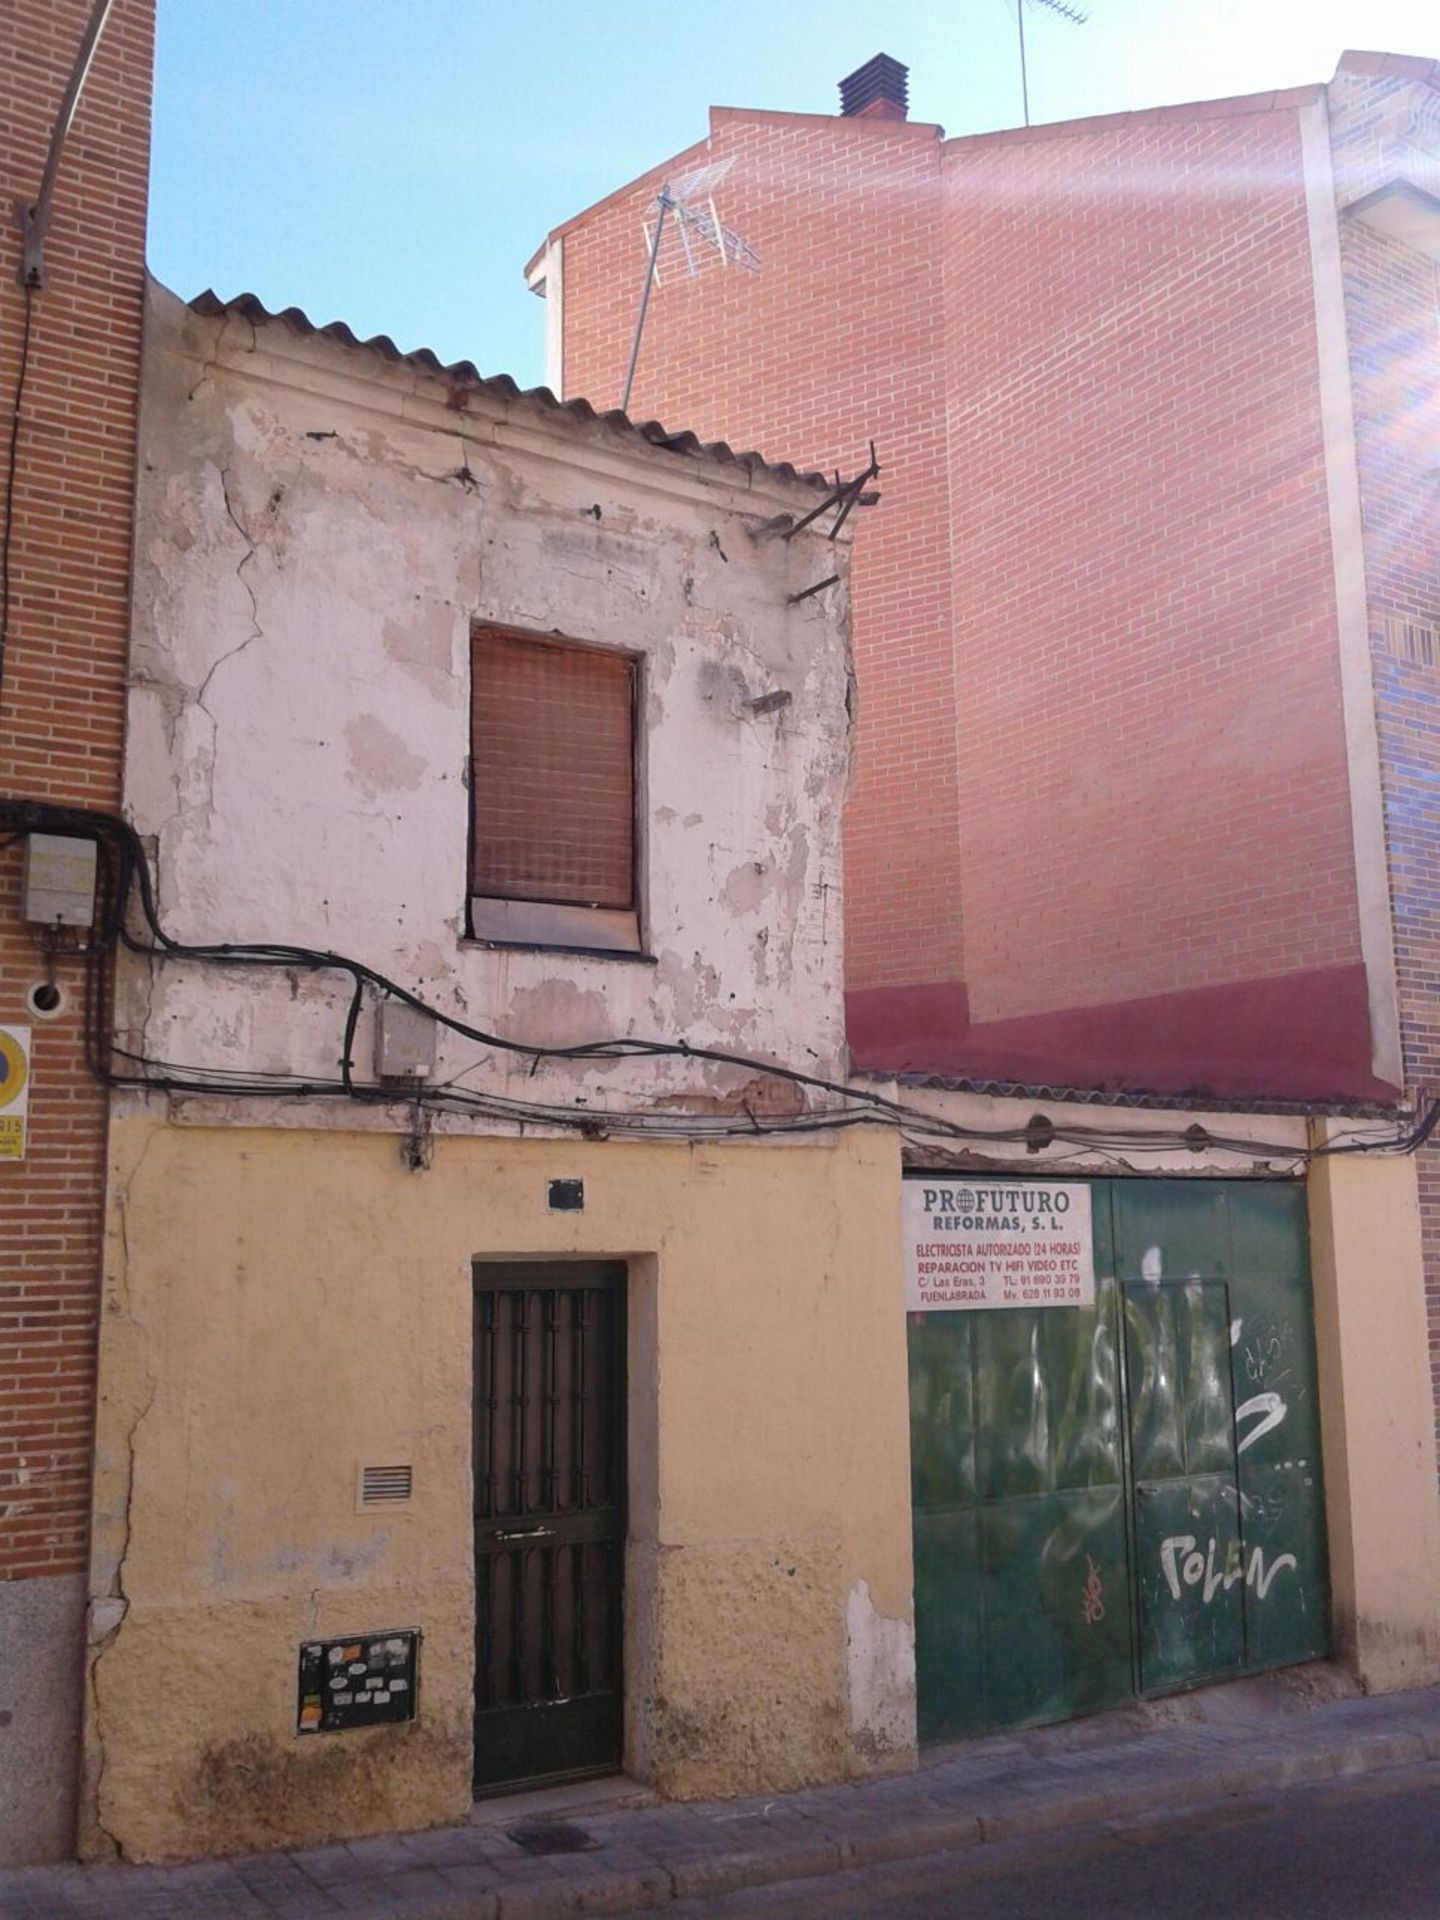 Demolición de vivienda antigua en Fuenlabrada